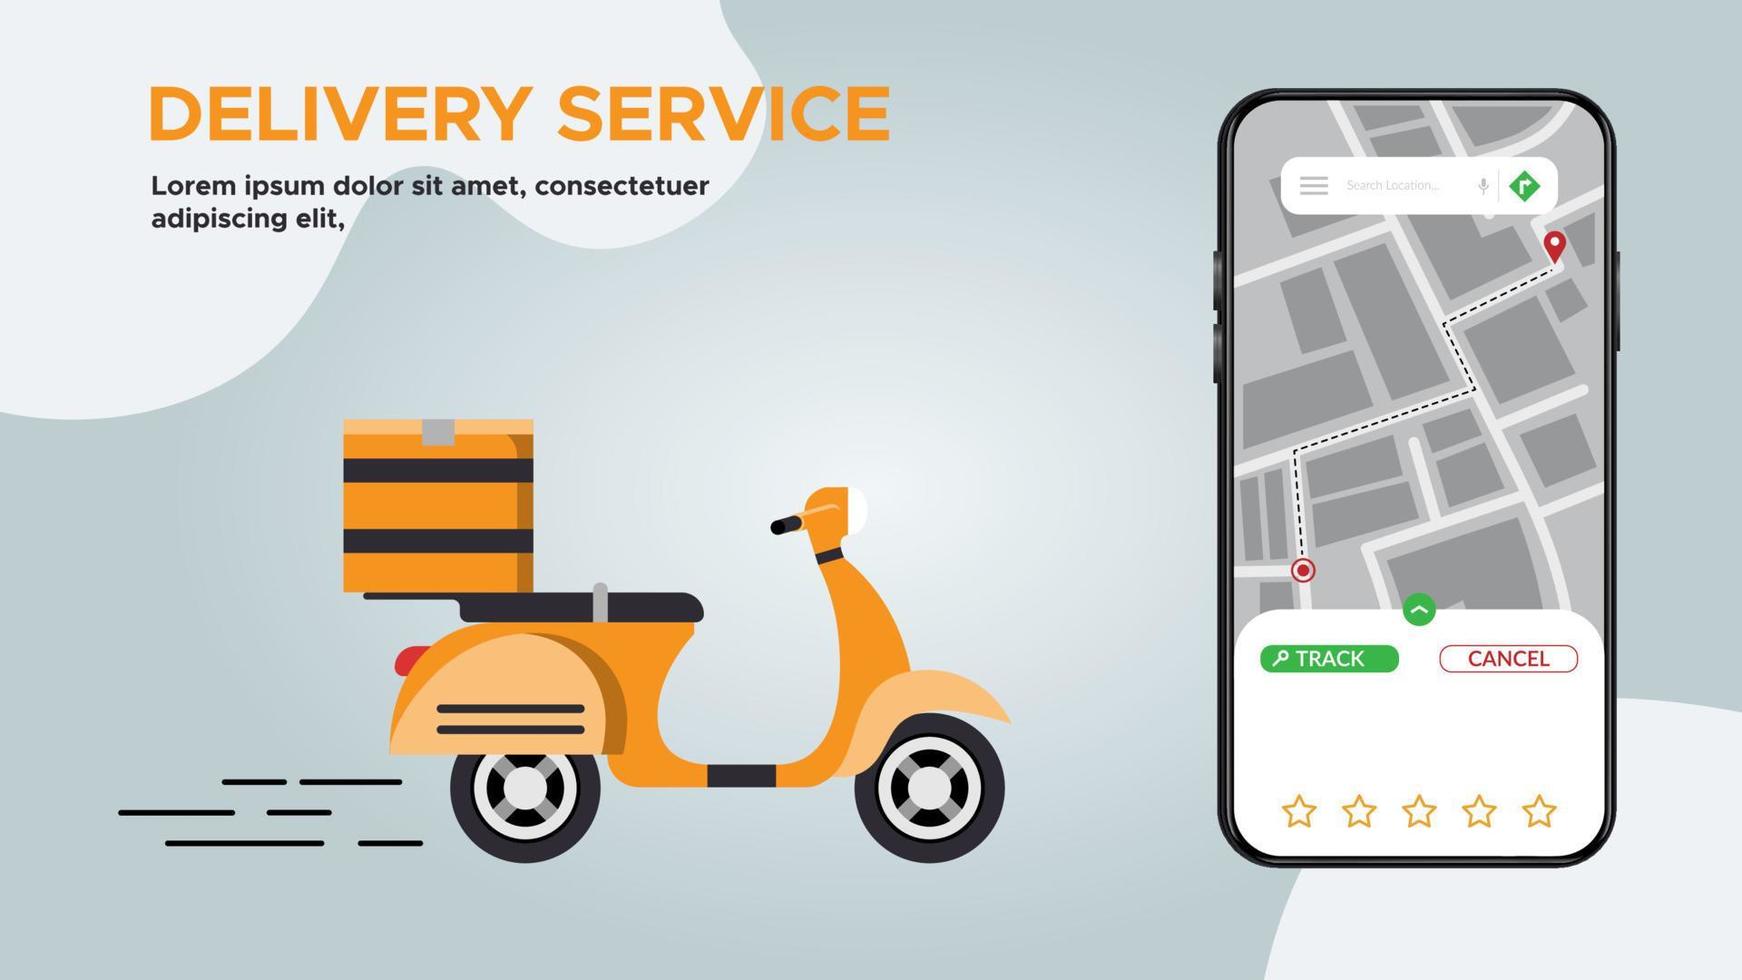 servizio di consegna monitoraggio online tramite scooter su app mobile, servizio di consegna di ordini logistici per pacchi, app mobile di illustrazione vettoriale. vettore